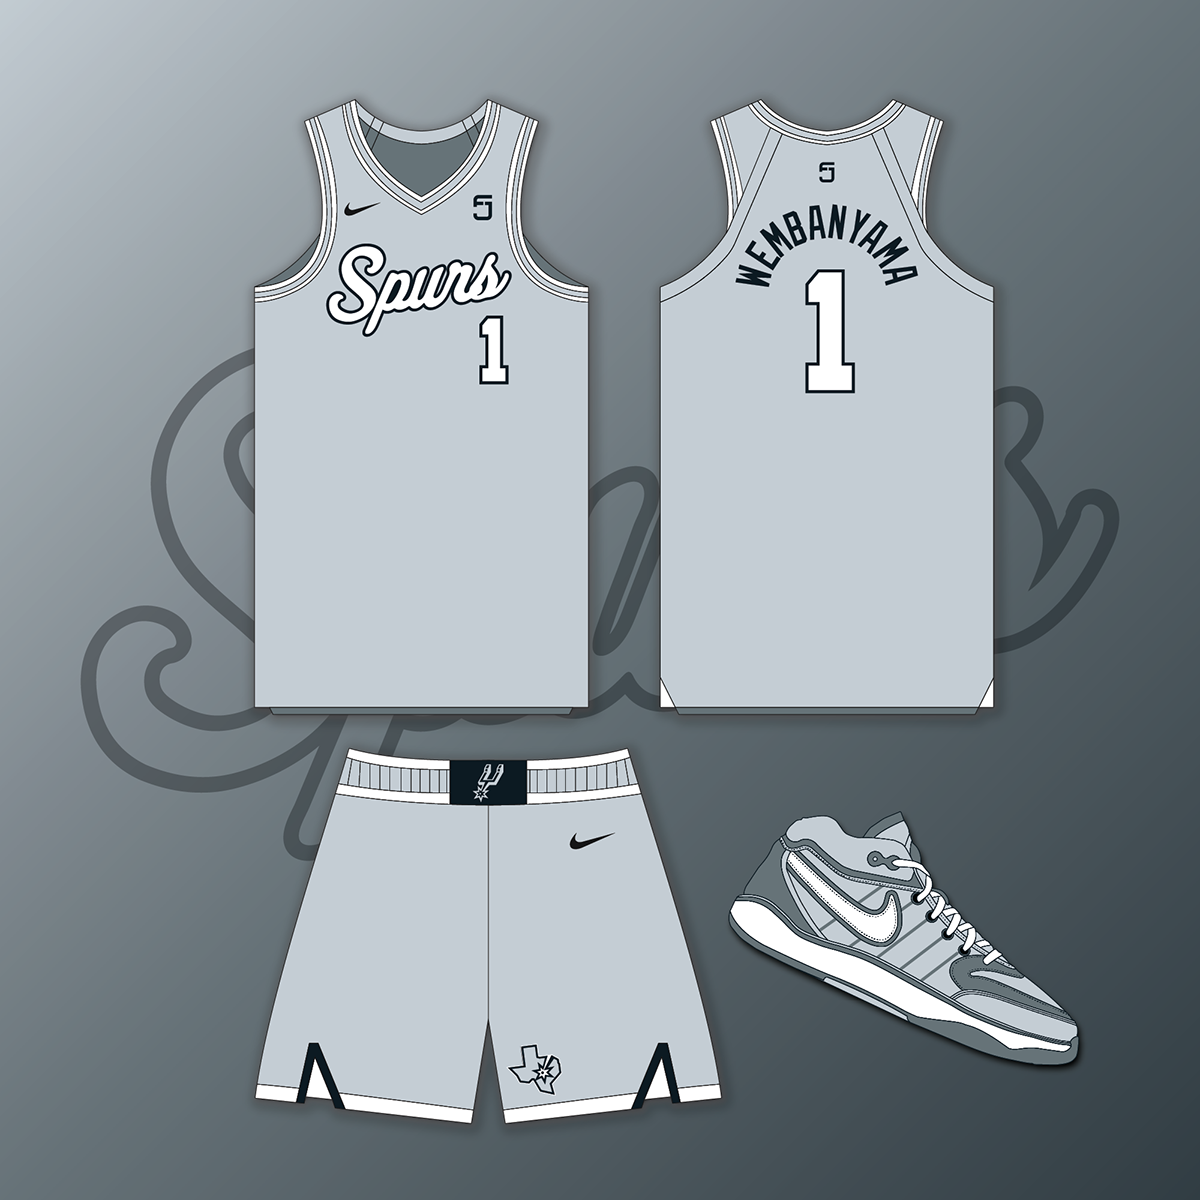 NBA nba jersey jersey basketball Nike uniform sports